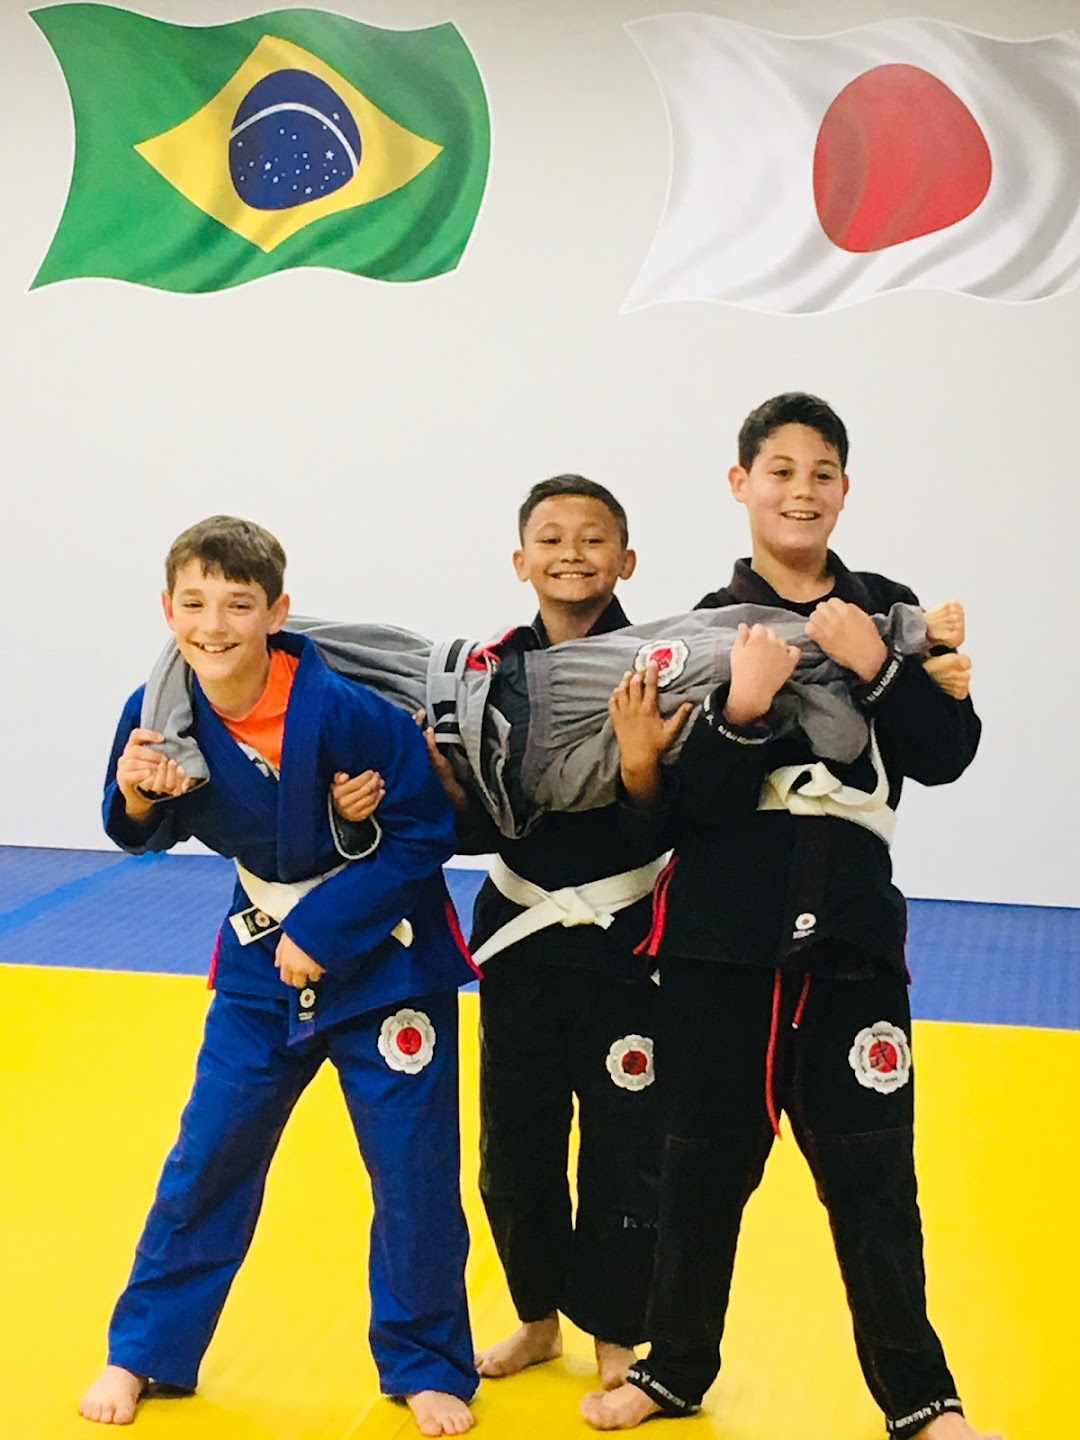 Rafael Brazilian Jiu Jitsu - Hope Mills